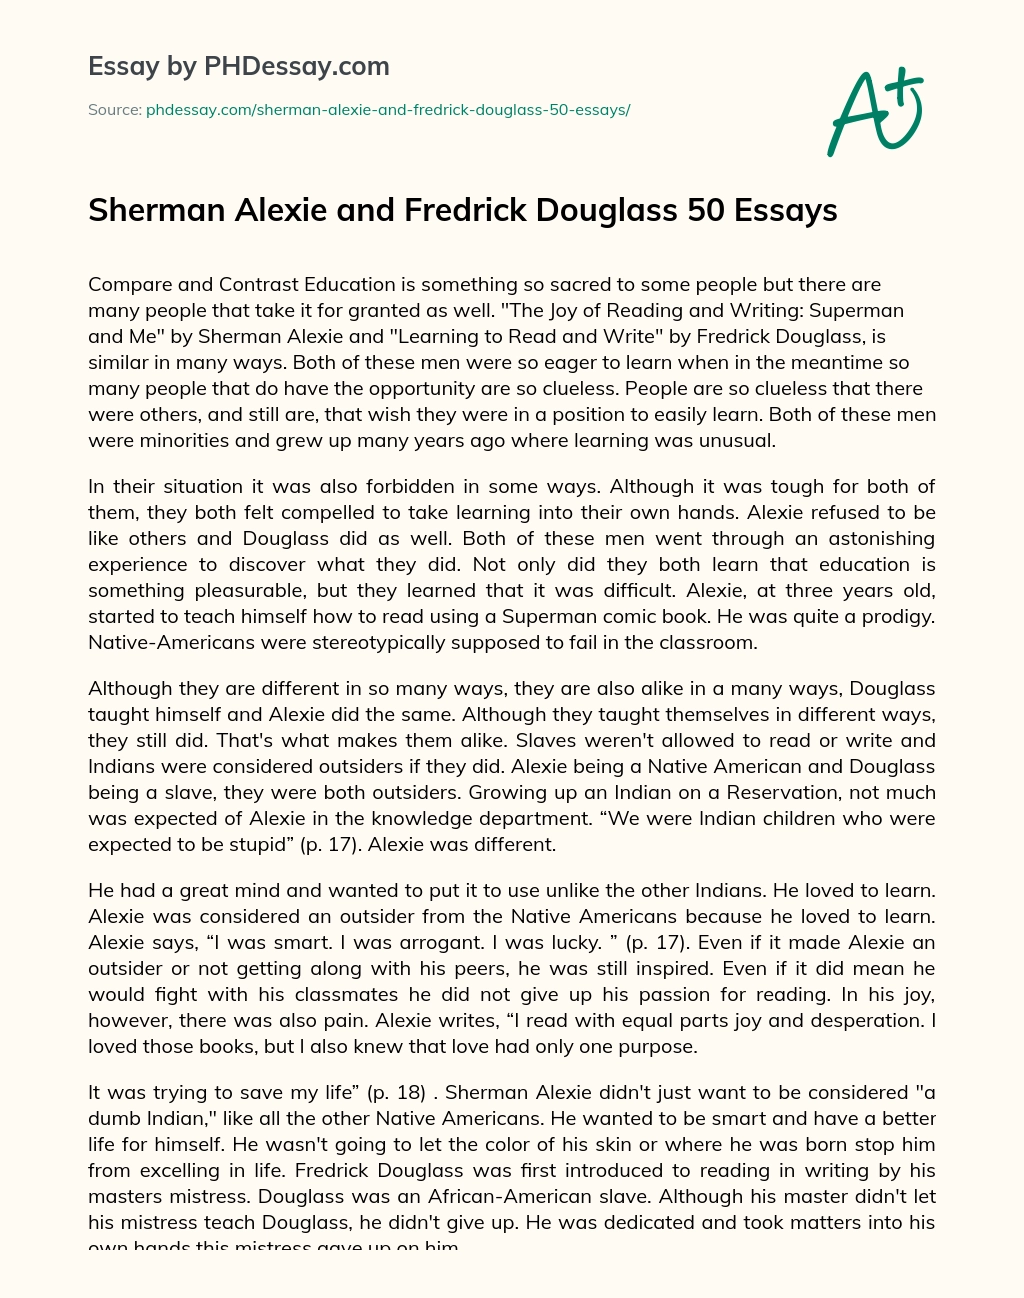 Sherman Alexie and Fredrick Douglass 50 Essays essay